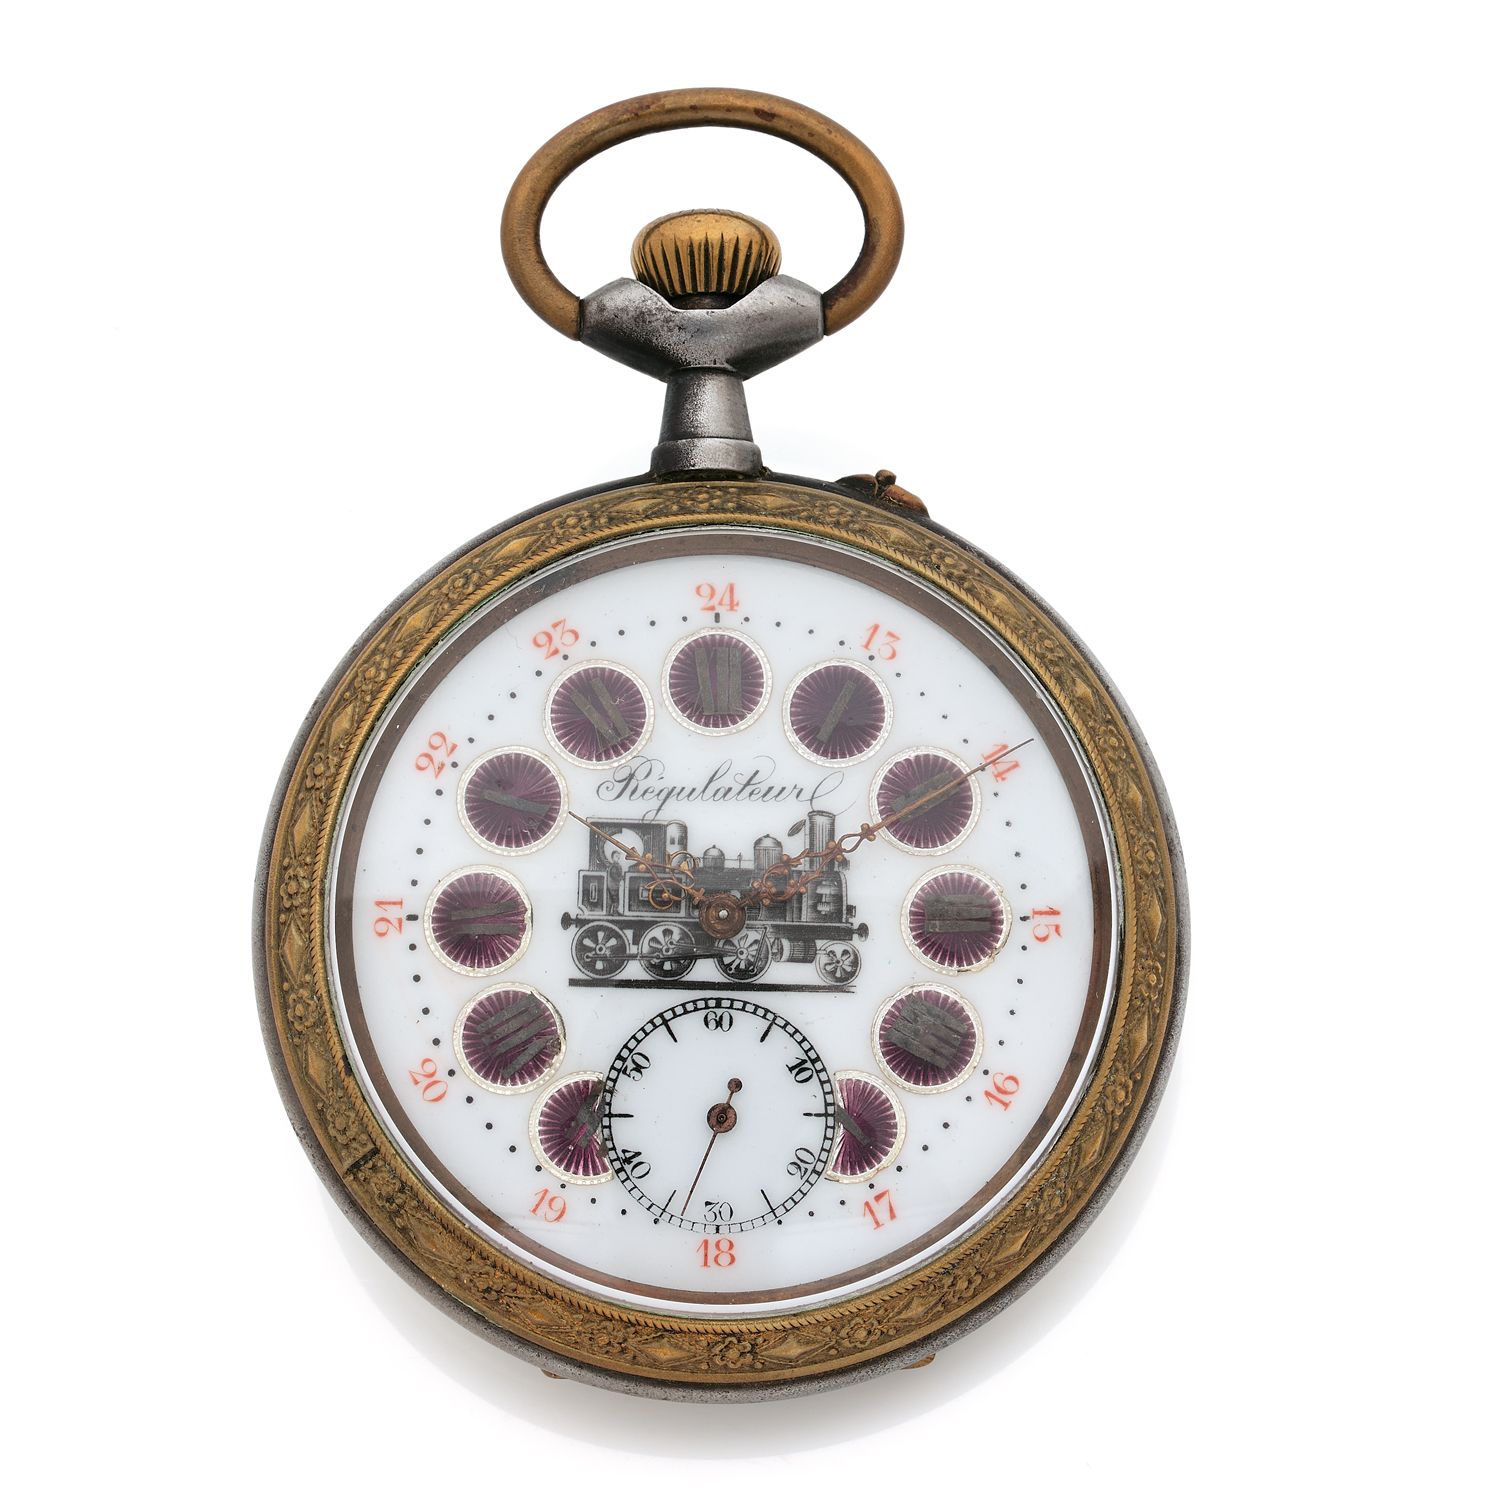 Null 调节器
约：1900年。
钢制24小时调节器夹层手表。雕刻和编号的箱子。珐琅表盘上有彩绘阿拉伯数字。秒针位于6点钟方向。机械机芯，手动上链。 

直径&hellip;